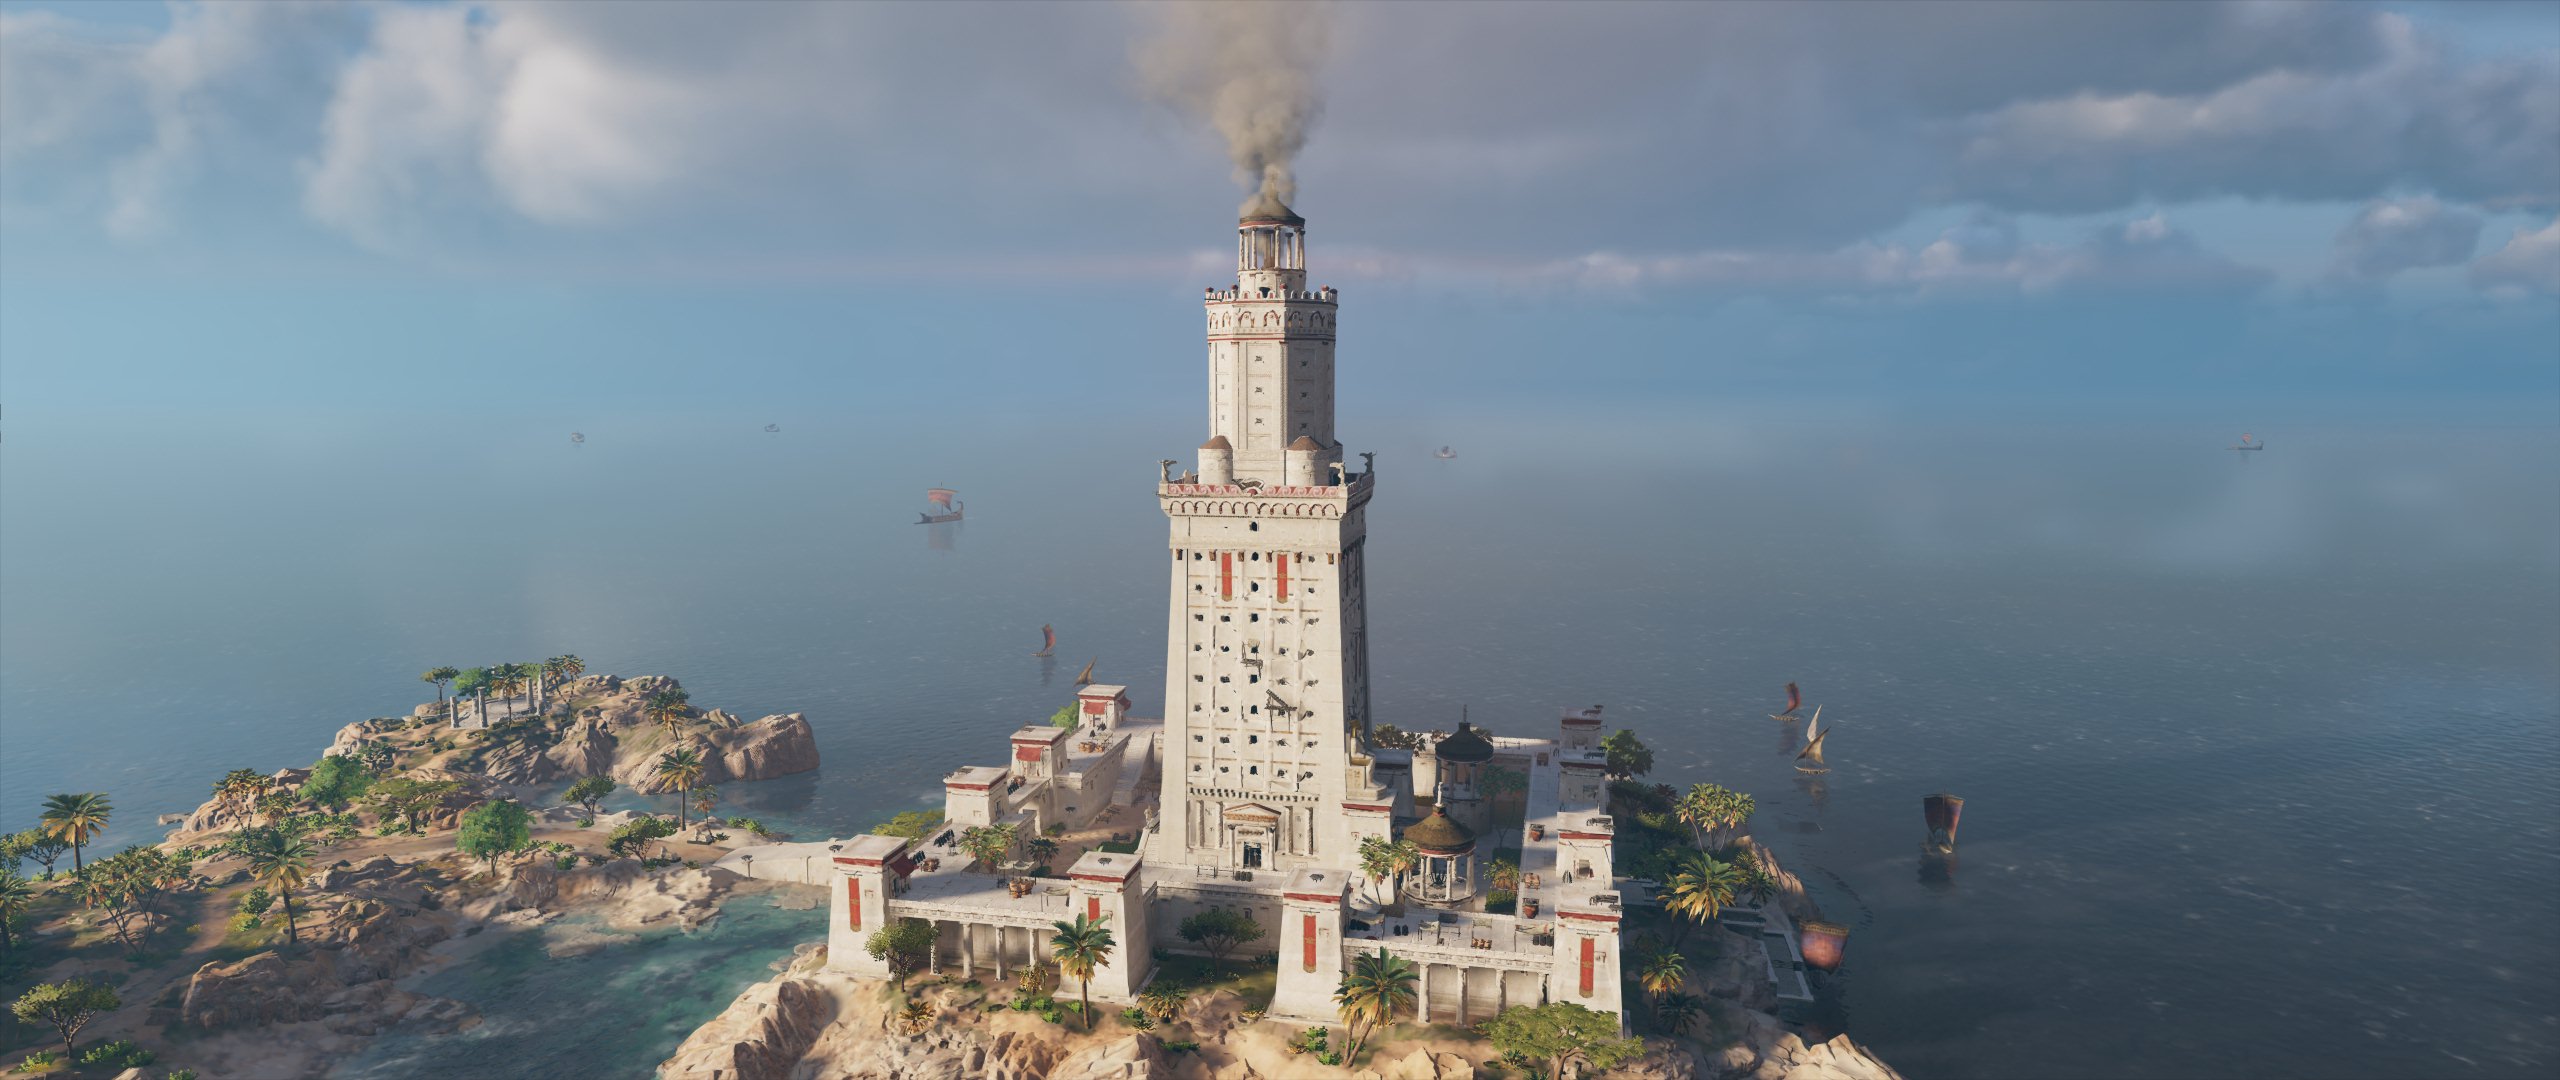 aflange Montgomery skøjte Lighthouse of Alexandria | Assassin's Creed Wiki | Fandom